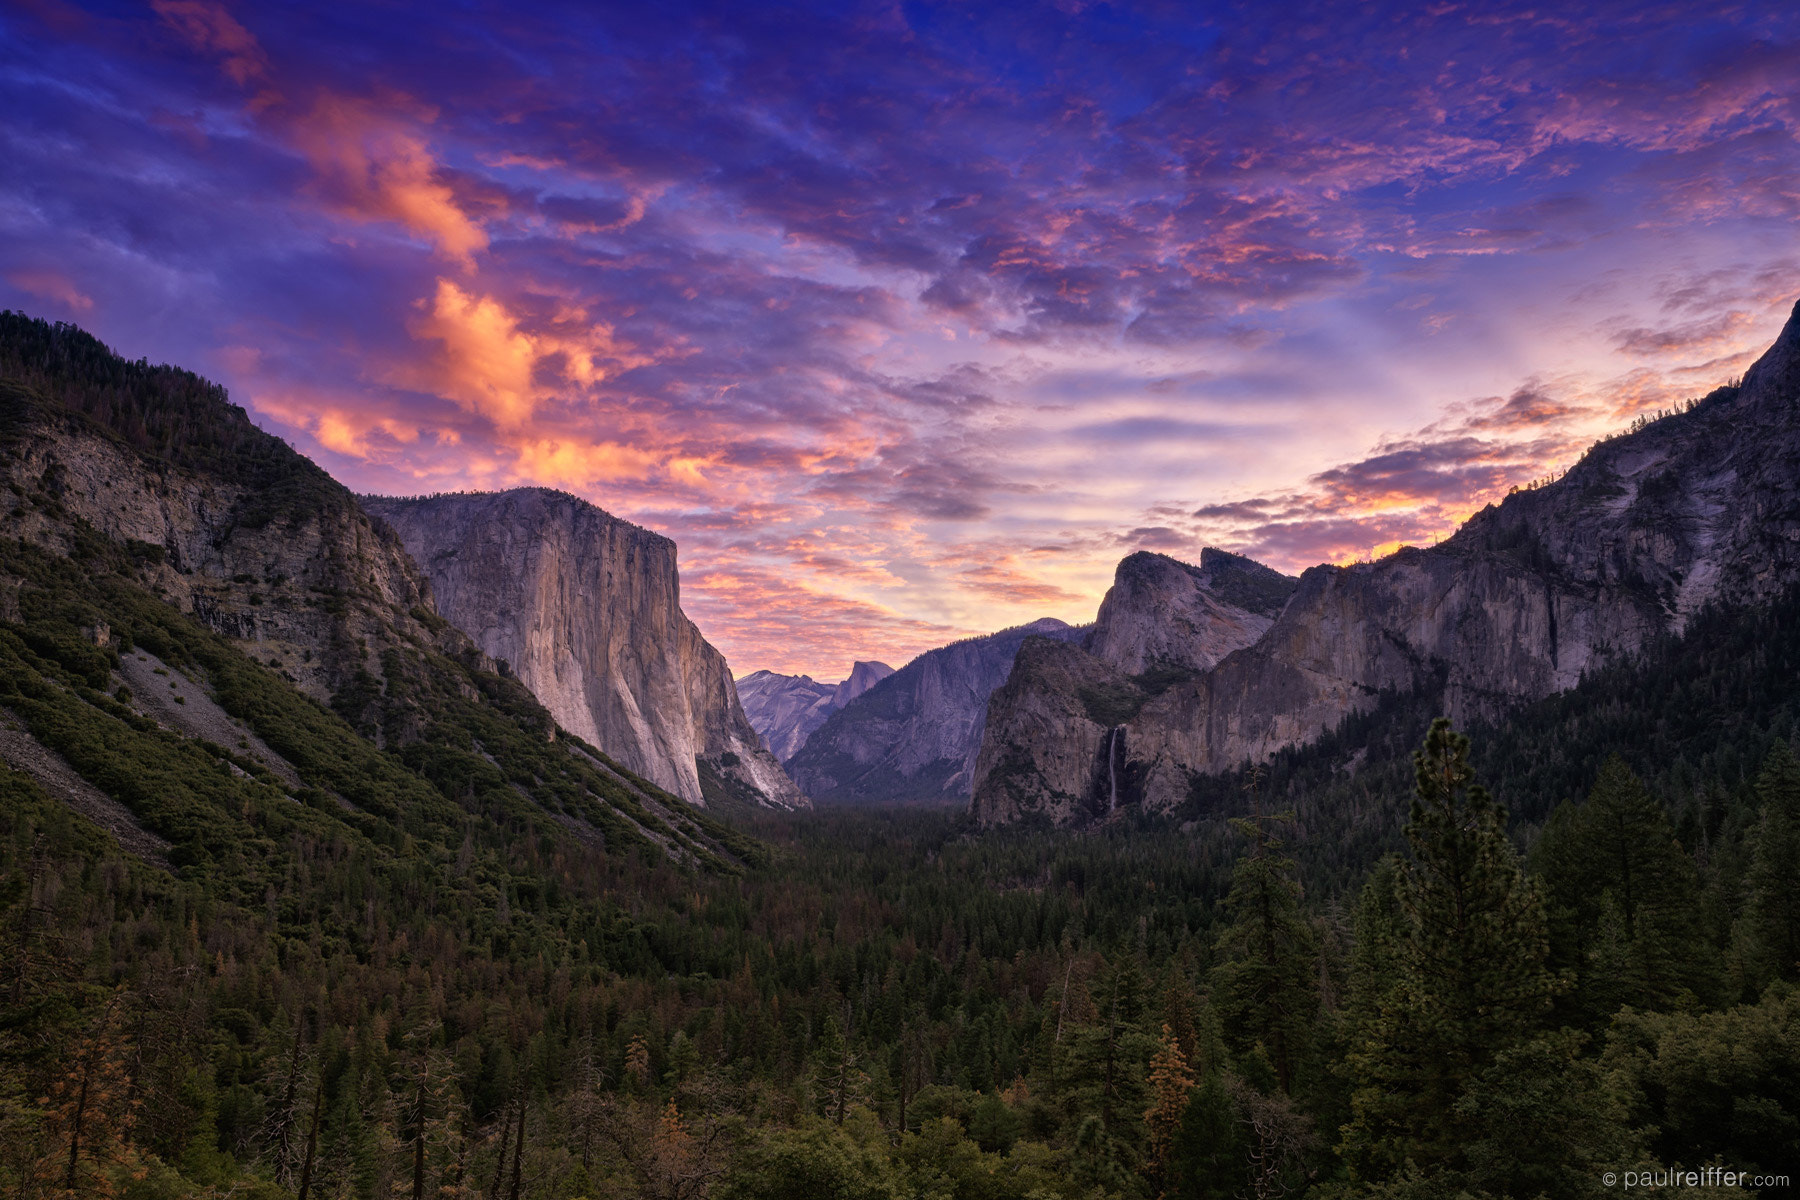 Phase One IQ3 100MP sample photo. Yosemite sunrise photography